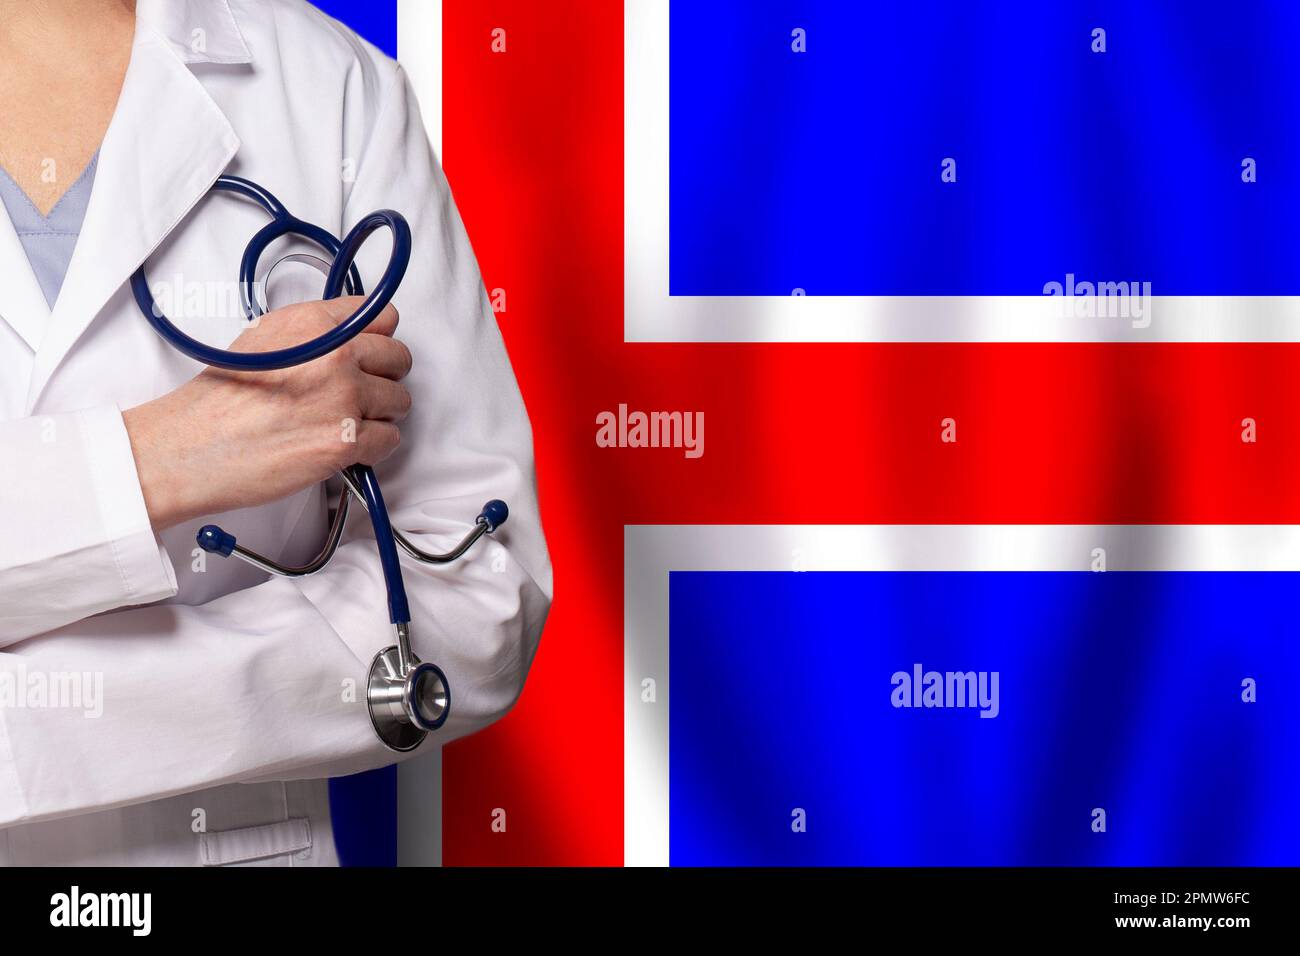 Iceland hospital immagini e fotografie stock ad alta risoluzione - Alamy